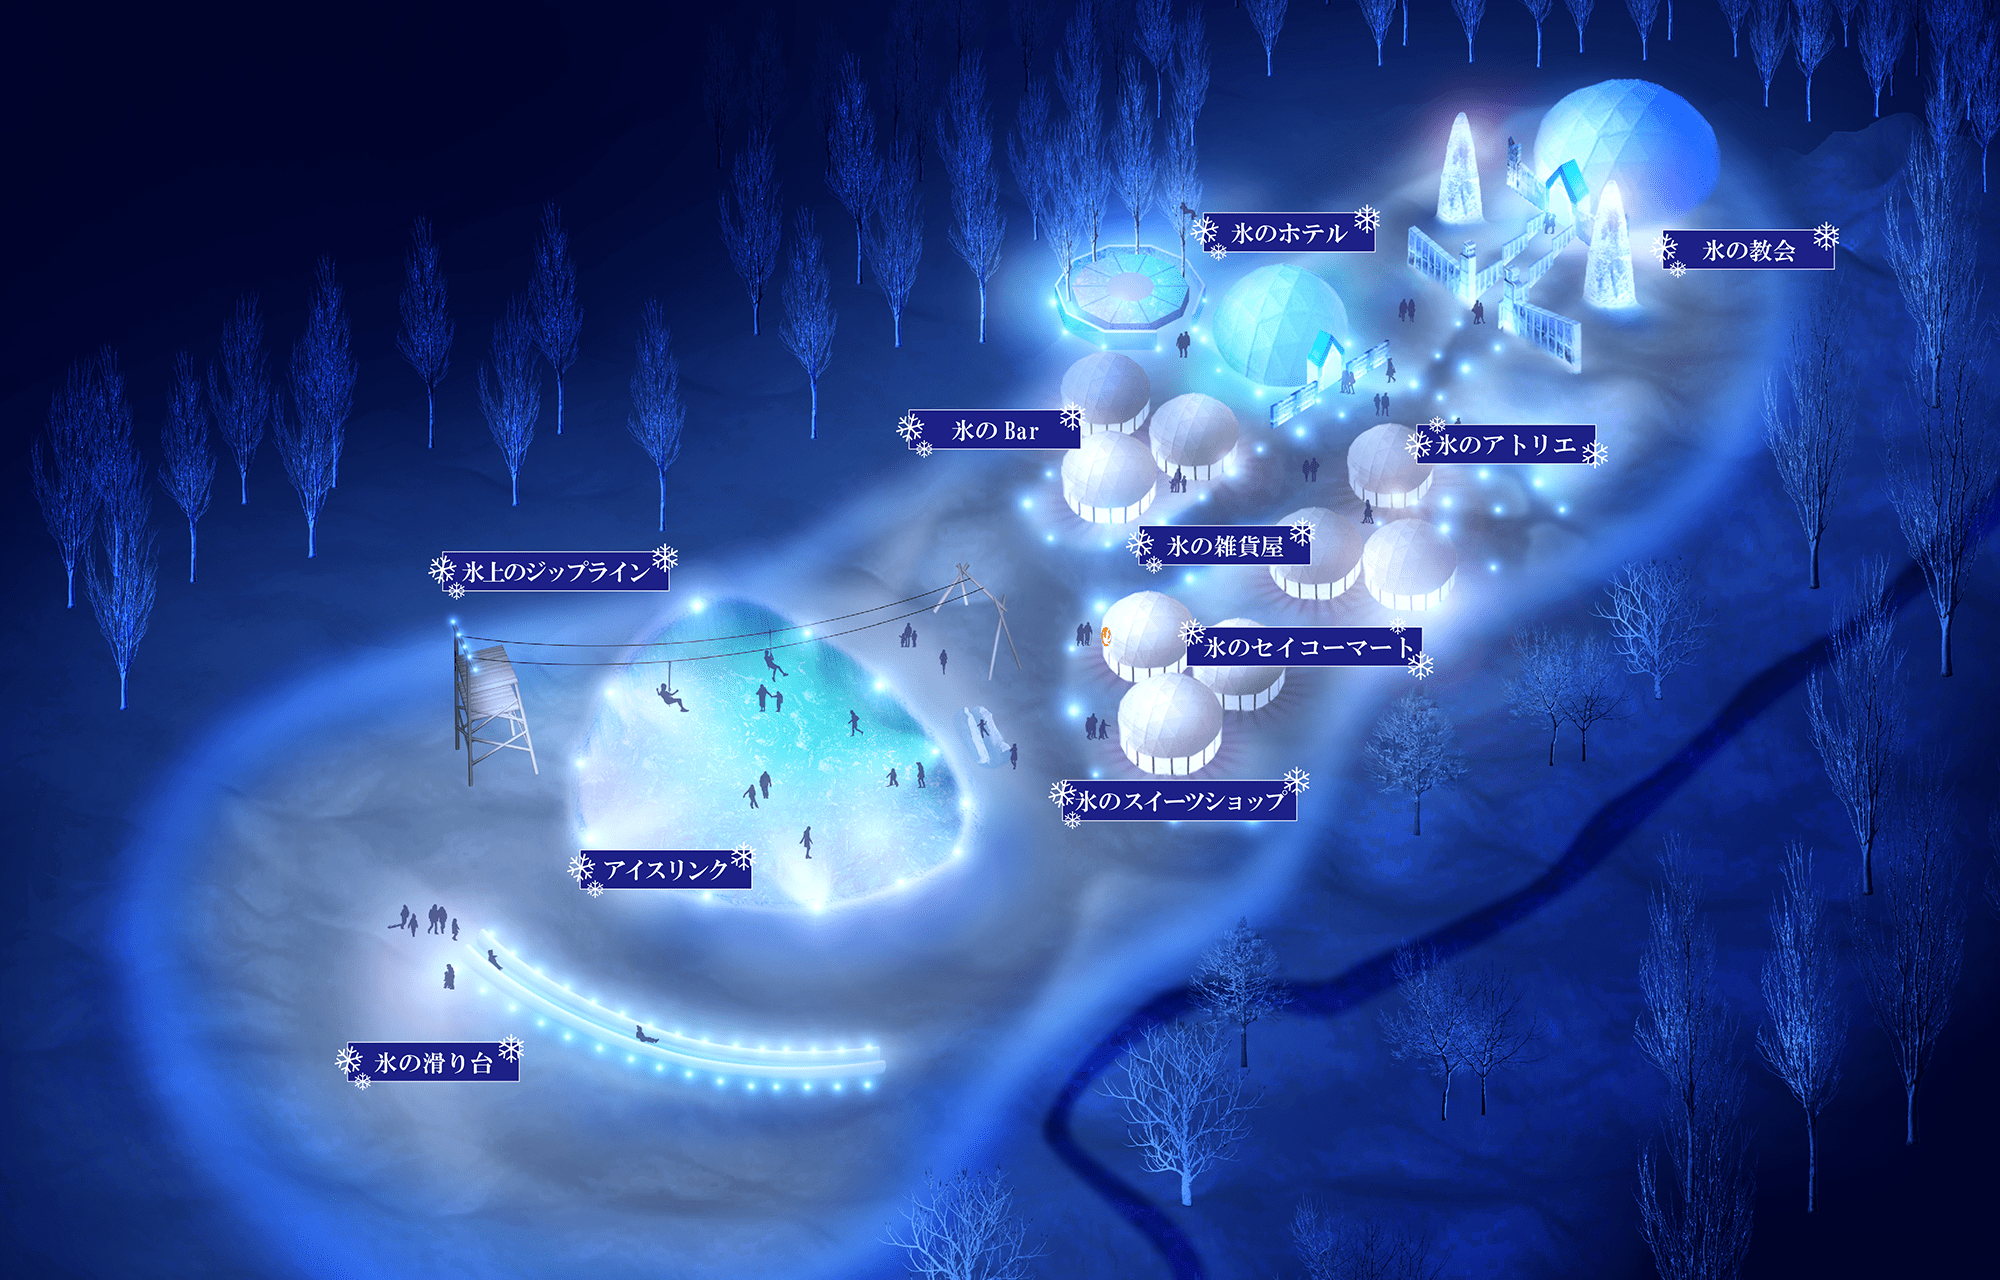 Tomamu Ice Village Map